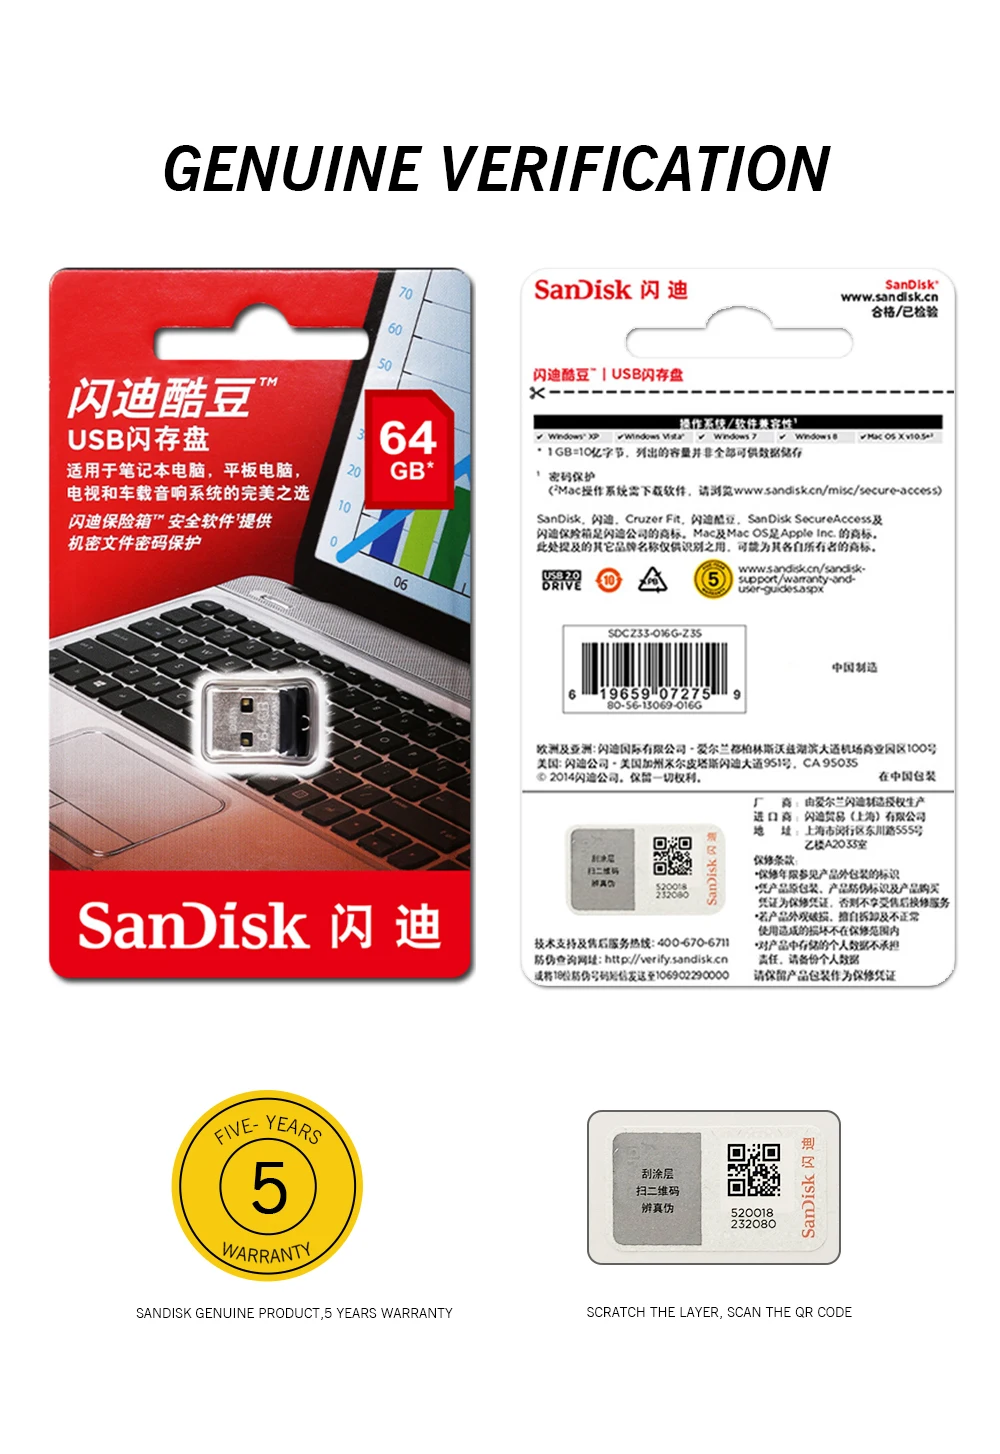 SanDisk Cruzer Fit CZ33 супер мини USB флеш-накопитель 64 ГБ USB 2,0 sandisk флеш-накопитель 32 Гб карта памяти s 16 Гб U диск